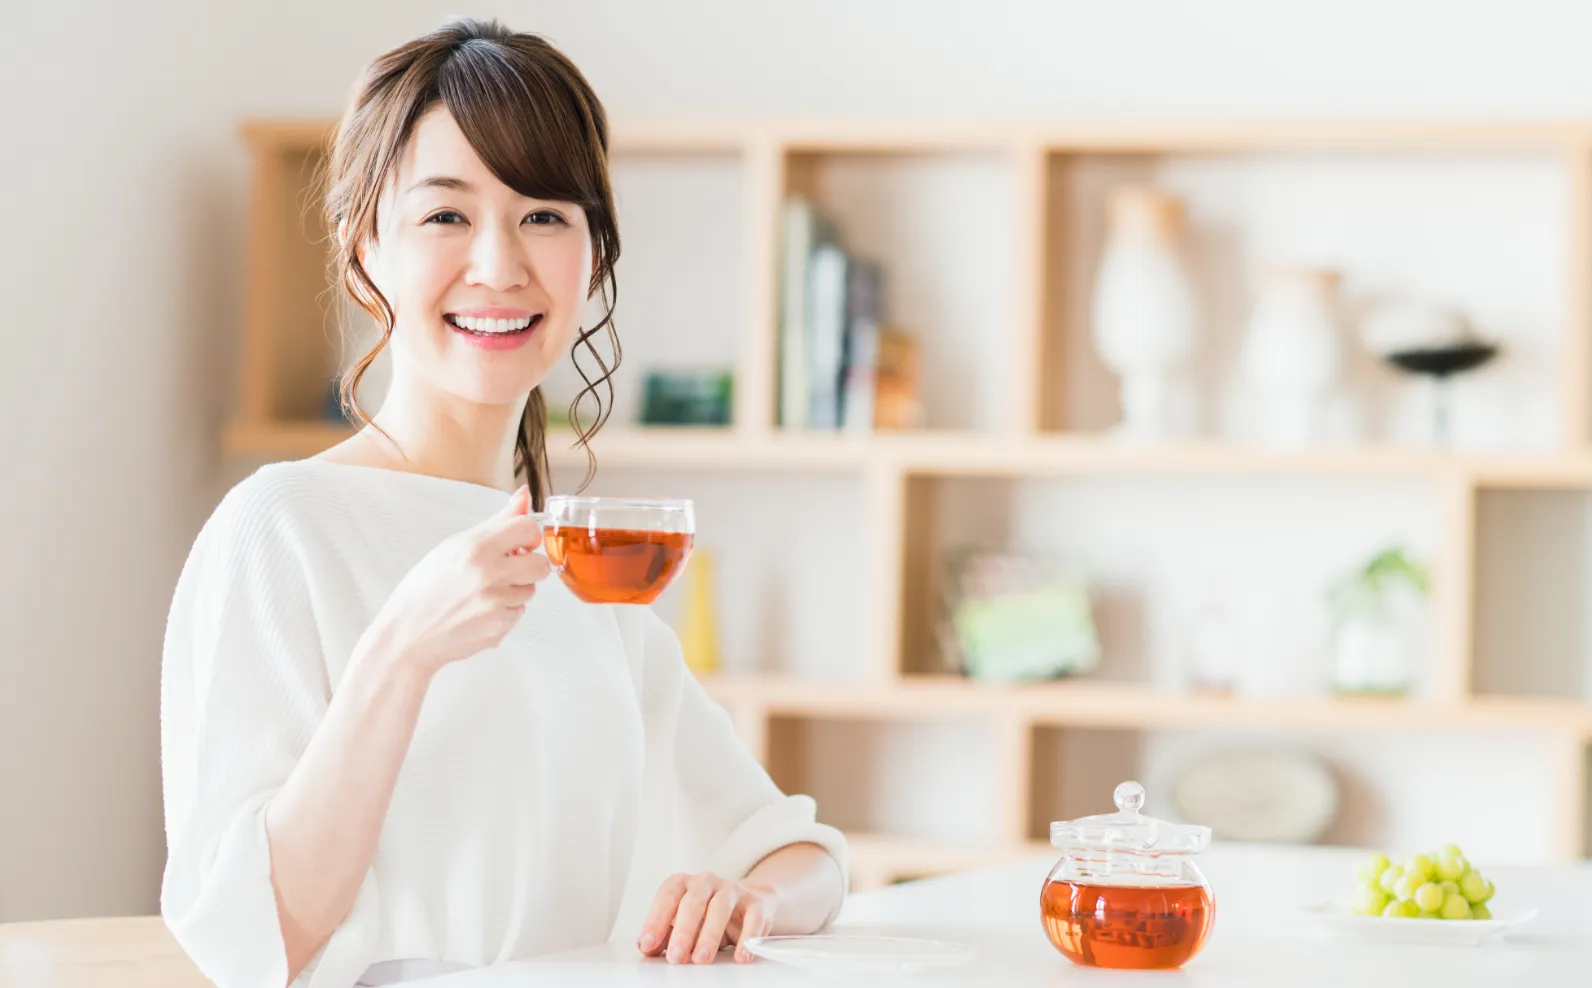 女性が和紅茶を持っている画像